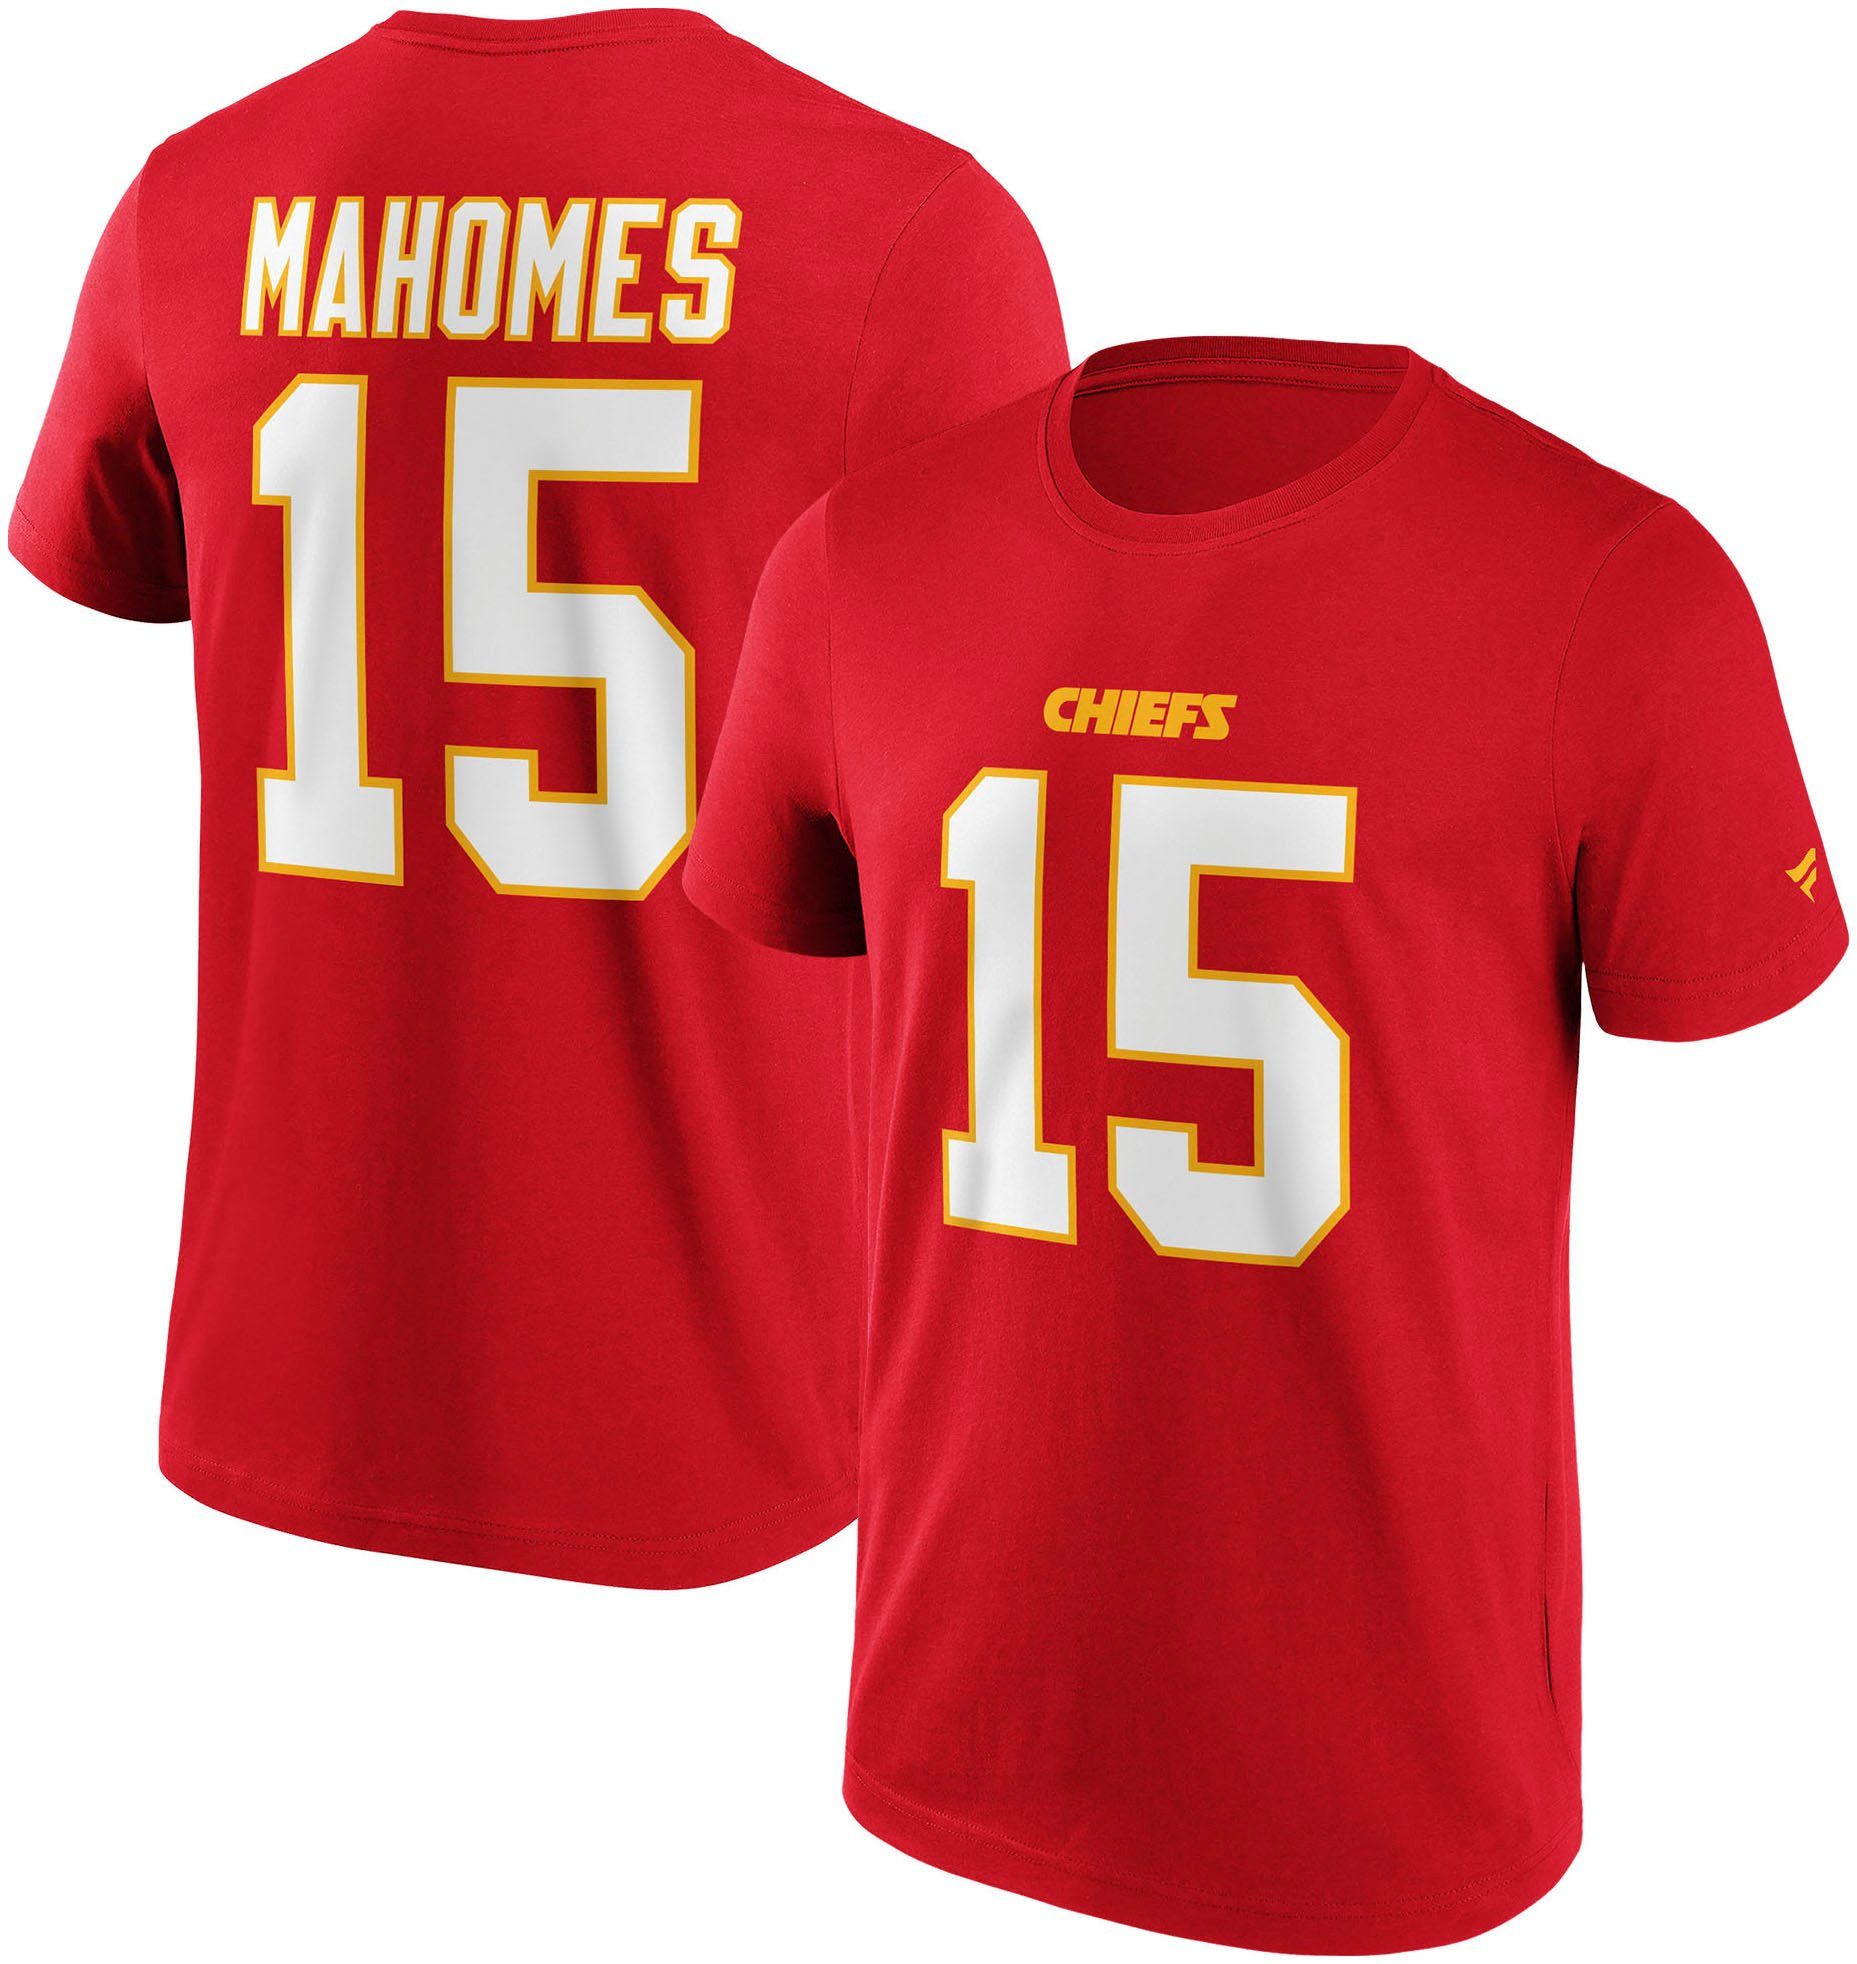 CHIEFS NFL N&N T-SHIRT KANSAS 15 Fanatics MAHOMES CITY GRAPHIC T-Shirt